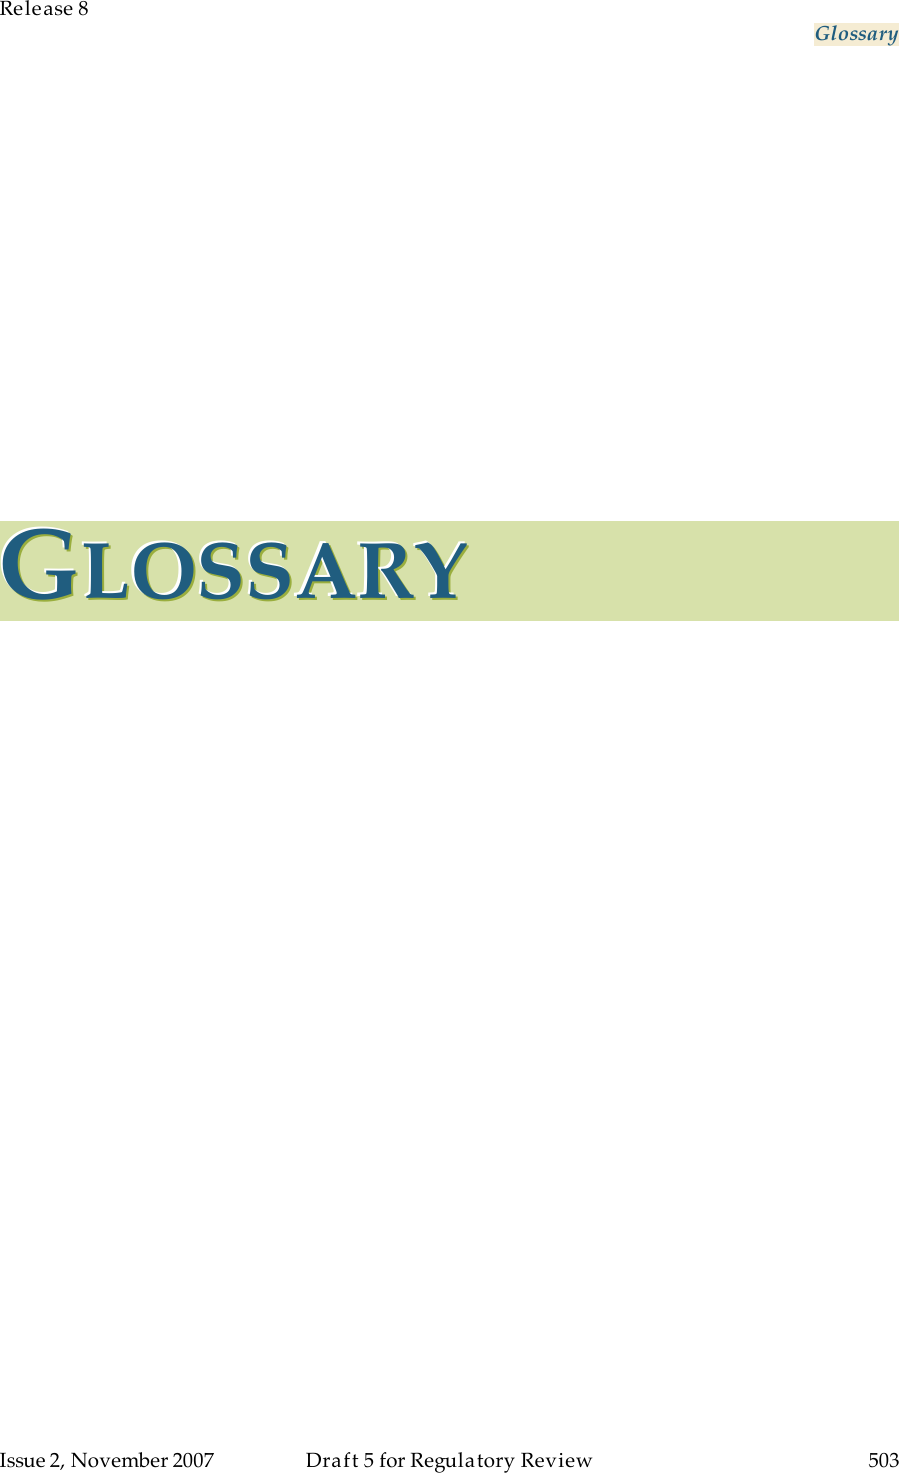 Release 8     Glossary   Issue 2, November 2007  Draft 5 for Regulatory Review  503     GGGLLLOOOSSSSSSAAARRRYYY   